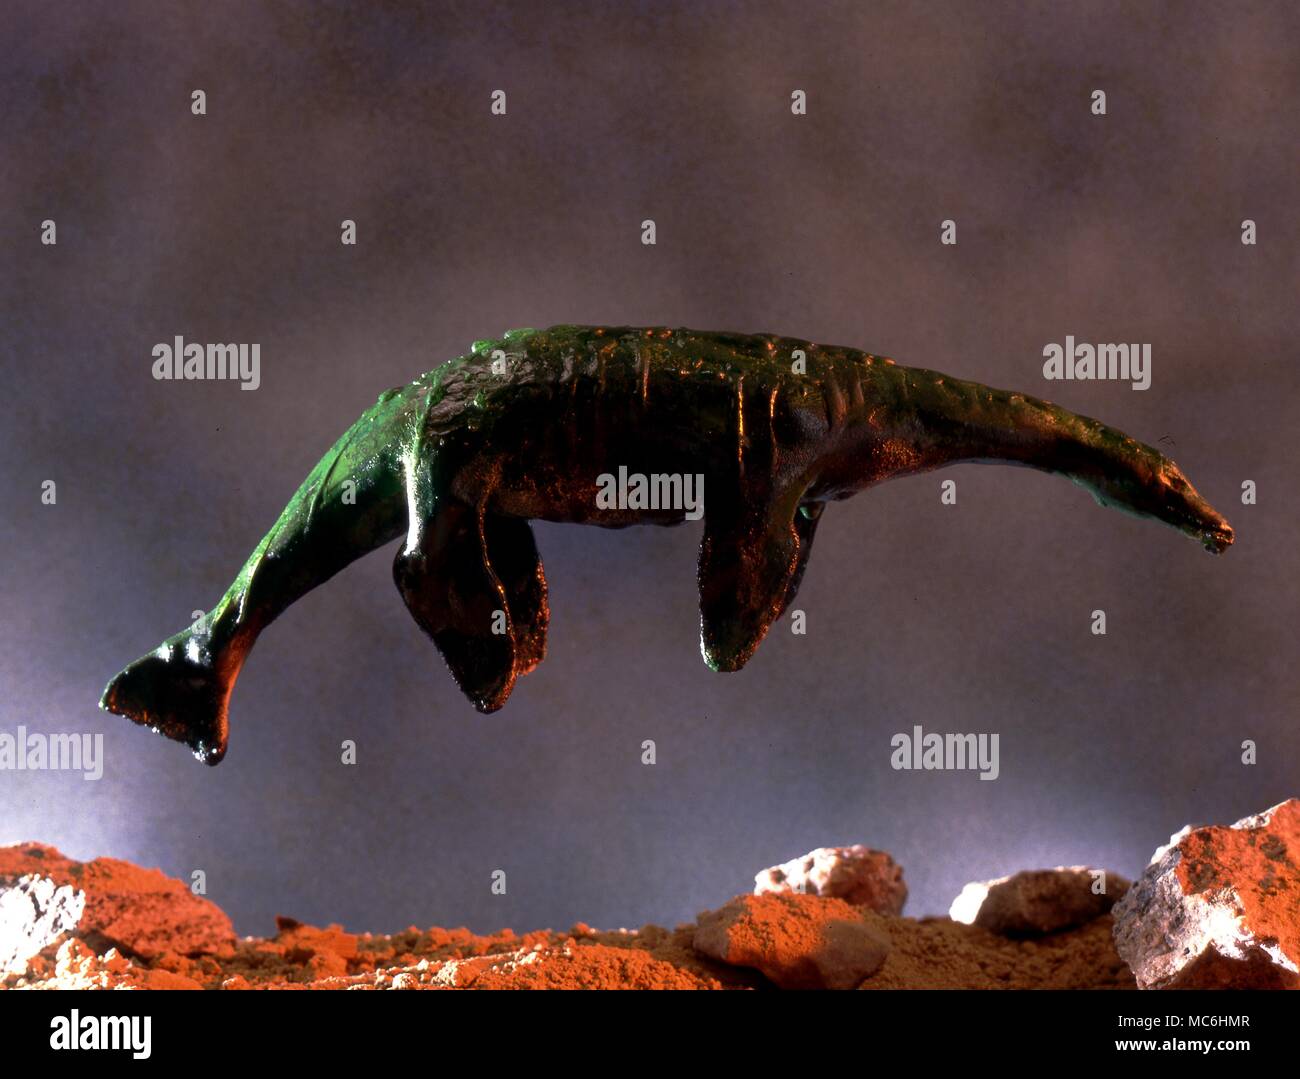 Adaptar Comprensión botella Monstruo marino fotografías e imágenes de alta resolución - Página 3 - Alamy